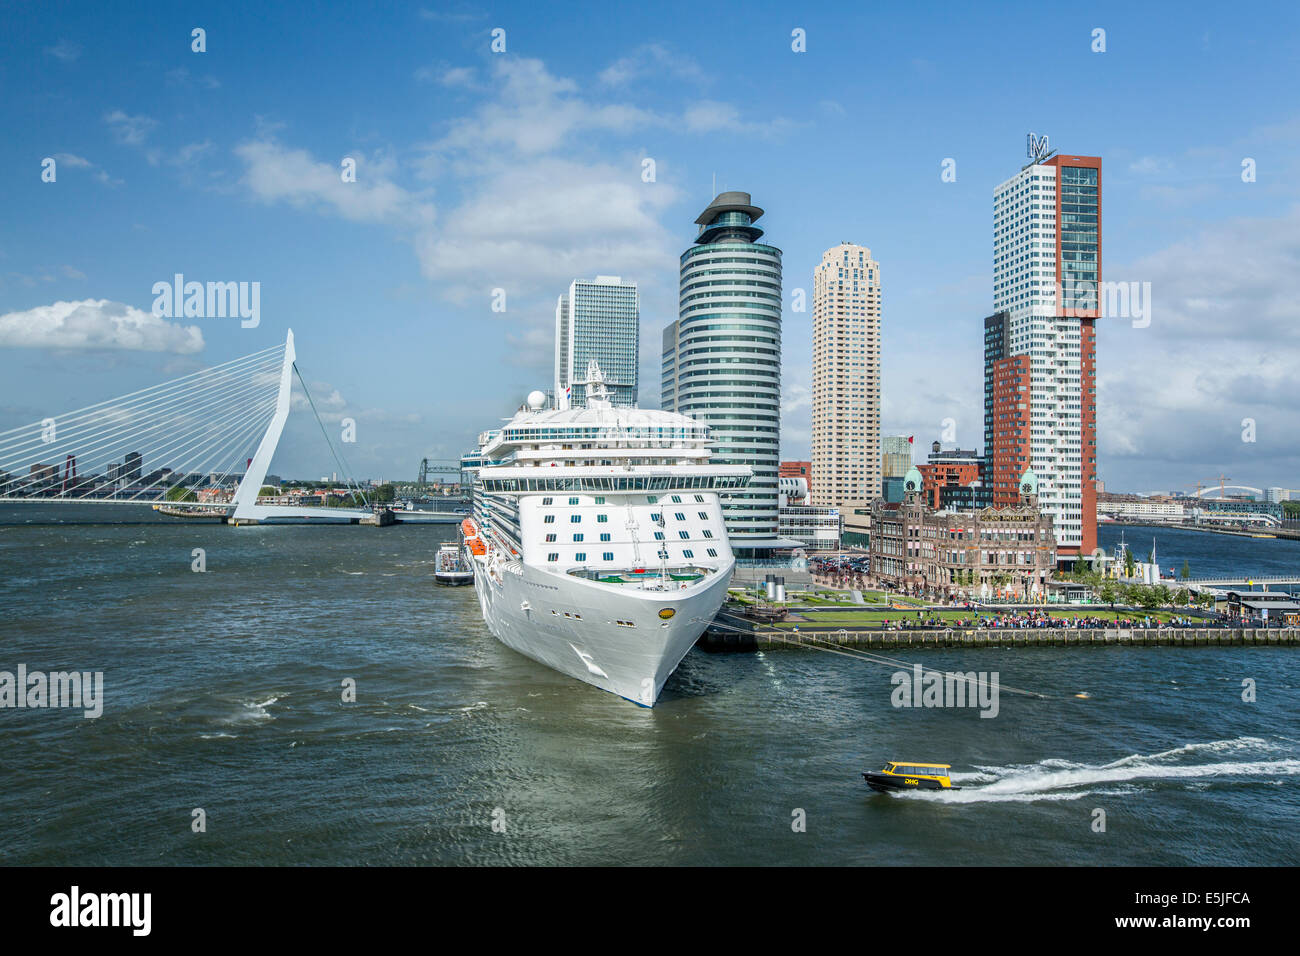 Países Bajos, Rotterdam, distrito de Kop van Zuid. Crucero Ocean Princess. El Hotel New York, Holland America Line. Puente Erasmus Foto de stock